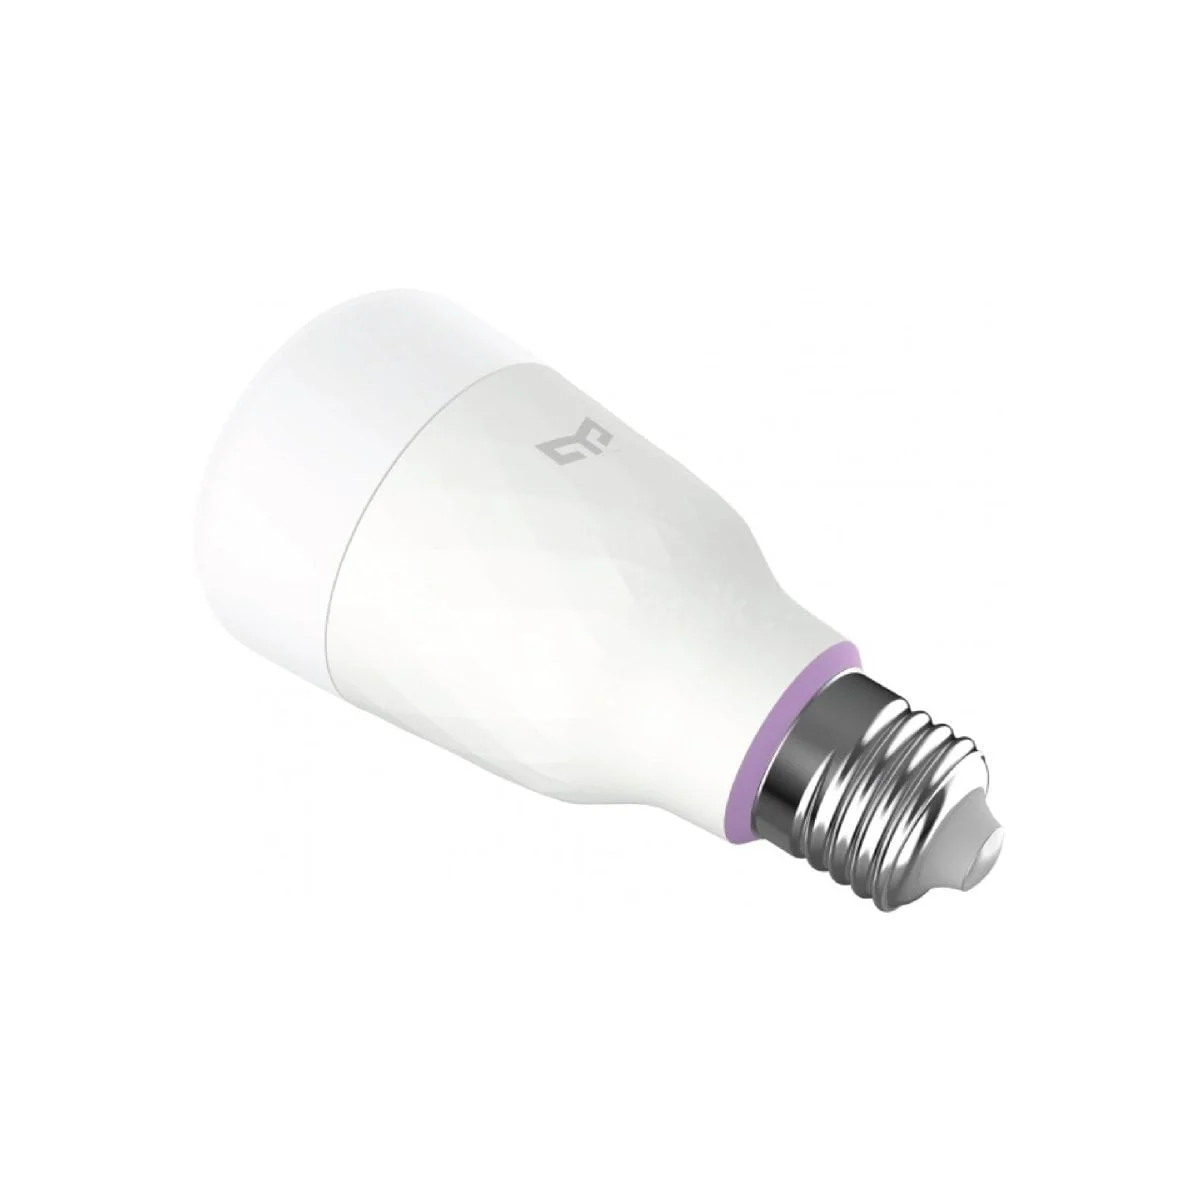 Bulb 25 شاومي سوف تسمح لك لمبة الإضاءة الذكية Yeelight 1S Rgb بإنشاء منزلك الذكي الخاص. يمكنك التحكم فيه بصوتك أو تطبيقك وتحديد درجة الحرارة والقوة التي يجب أن يلمع بها. التدفق الضوئي: 800 لومن درجة حرارة اللون: 1700 K-6500K حامل المصباح: E27 الطاقة المقدرة: 8.5 واط &Nbsp; 16 مليون لون مع تمكين Wifi والتحكم الصوتي والتحكم في التطبيقات ومزامنة الموسيقى &Lt;Img Class=&Quot;Alignnone Wp-Image-8061 Size-Full&Quot; Src=&Quot;Https://Lablaab.com/Wp-Content/Uploads/2020/04/Bulb-27-2-Scaled.jpg&Quot; Alt=&Quot;&Quot; Width=&Quot;2560&Quot; Height=&Quot;357&Quot;&Gt; &Nbsp; ييلايت سمارت لمبة لمبة يلايت الذكية 1S (ألوان)